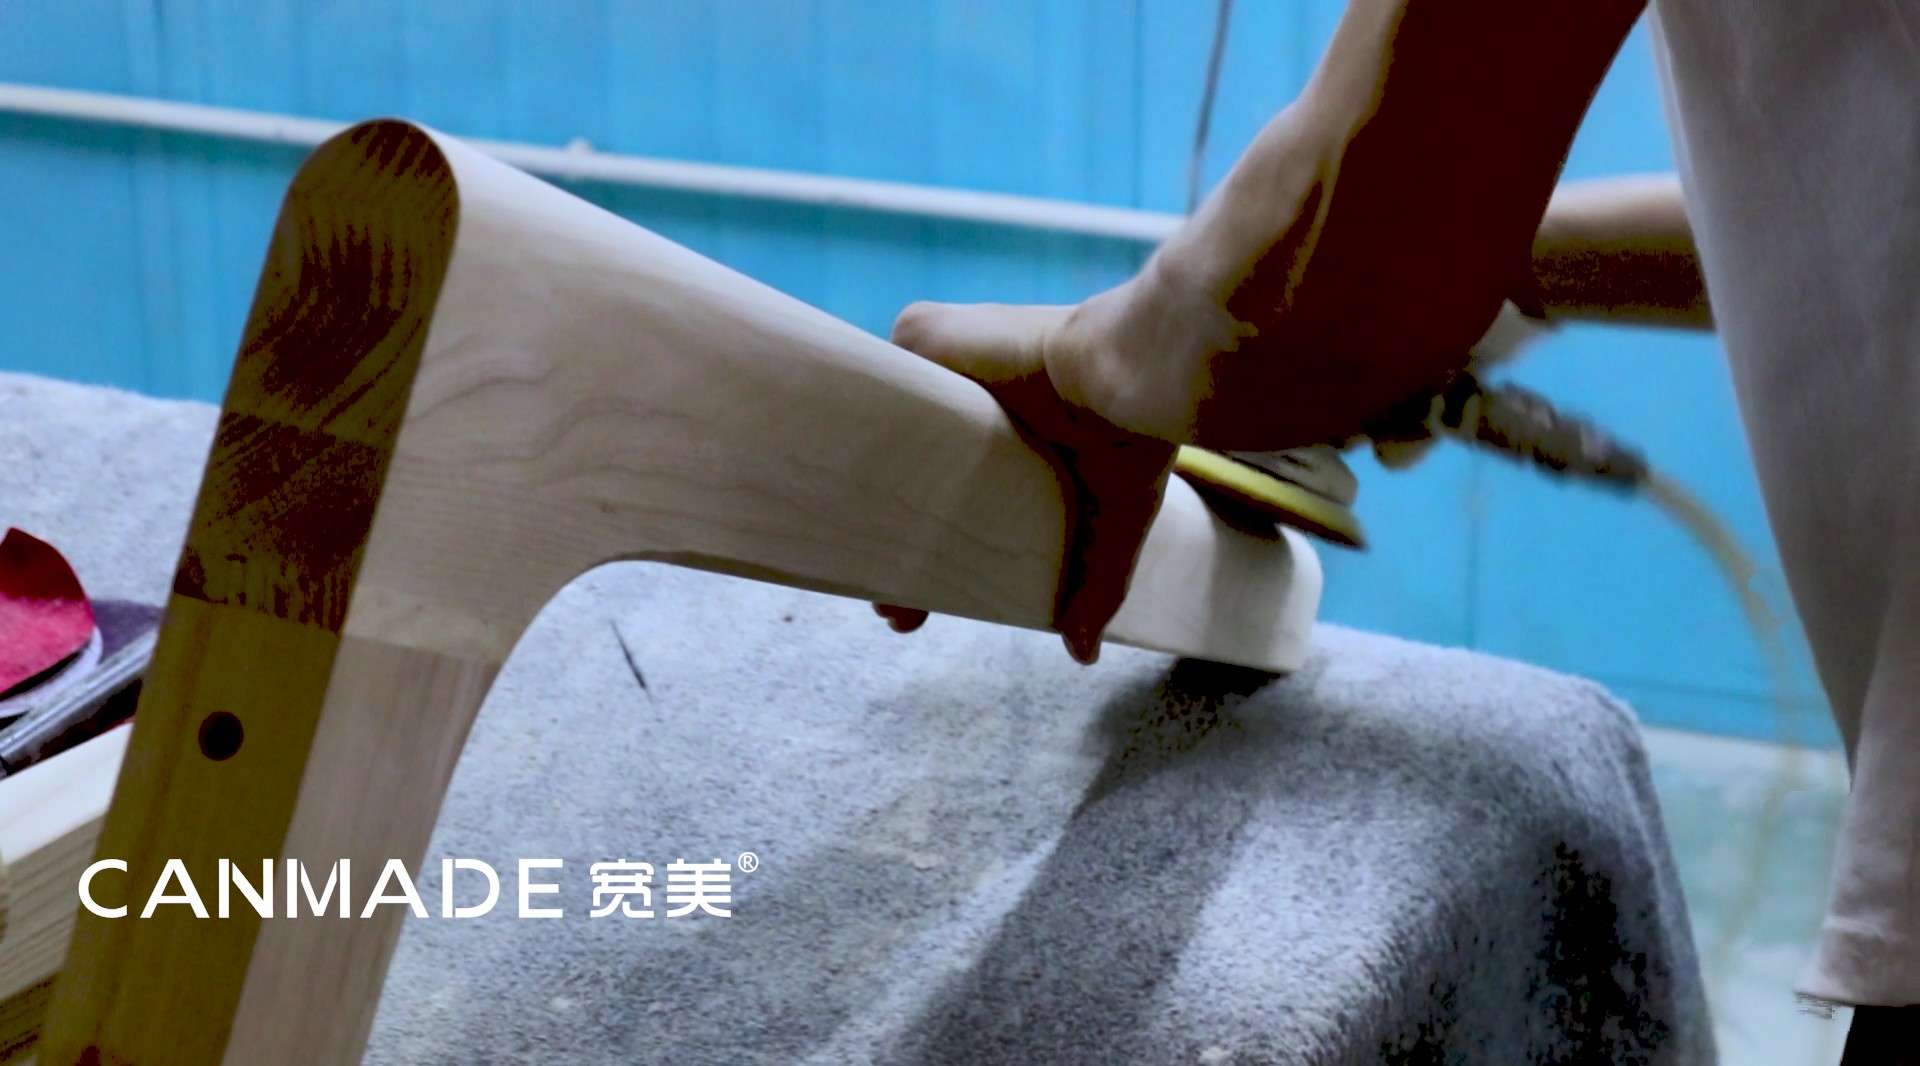 为广州一家家具制造企业拍摄的展示片。